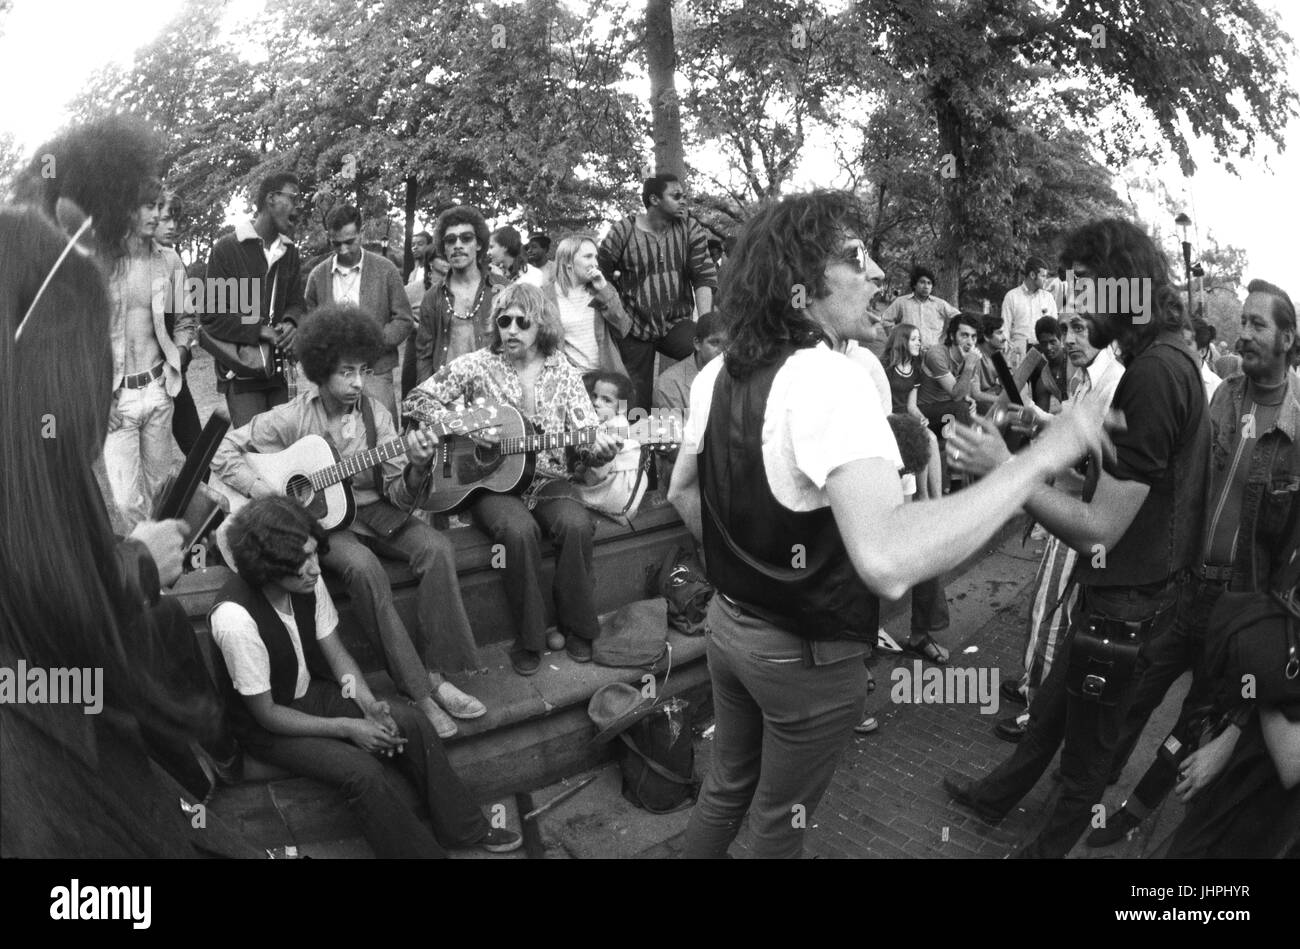 David Peel, avec débardeur, jouait avec le Lower East Side Band dans Central Park 1969 Banque D'Images